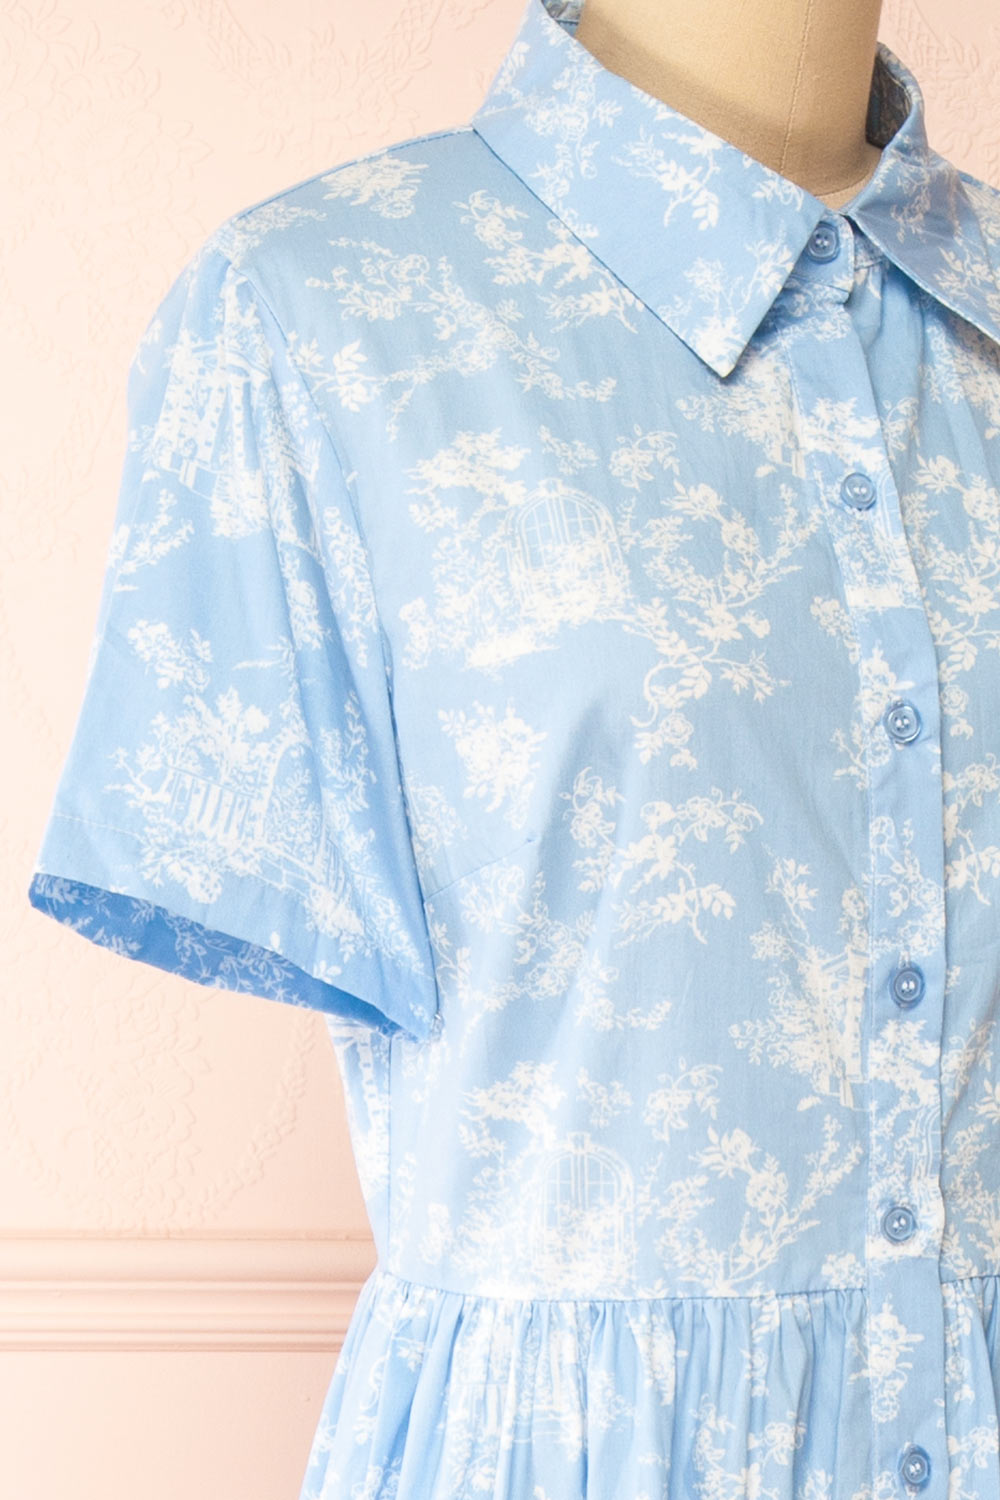 Victoire Blue Buttoned Midi Floral Shirt Dress | Boutique 1861 side